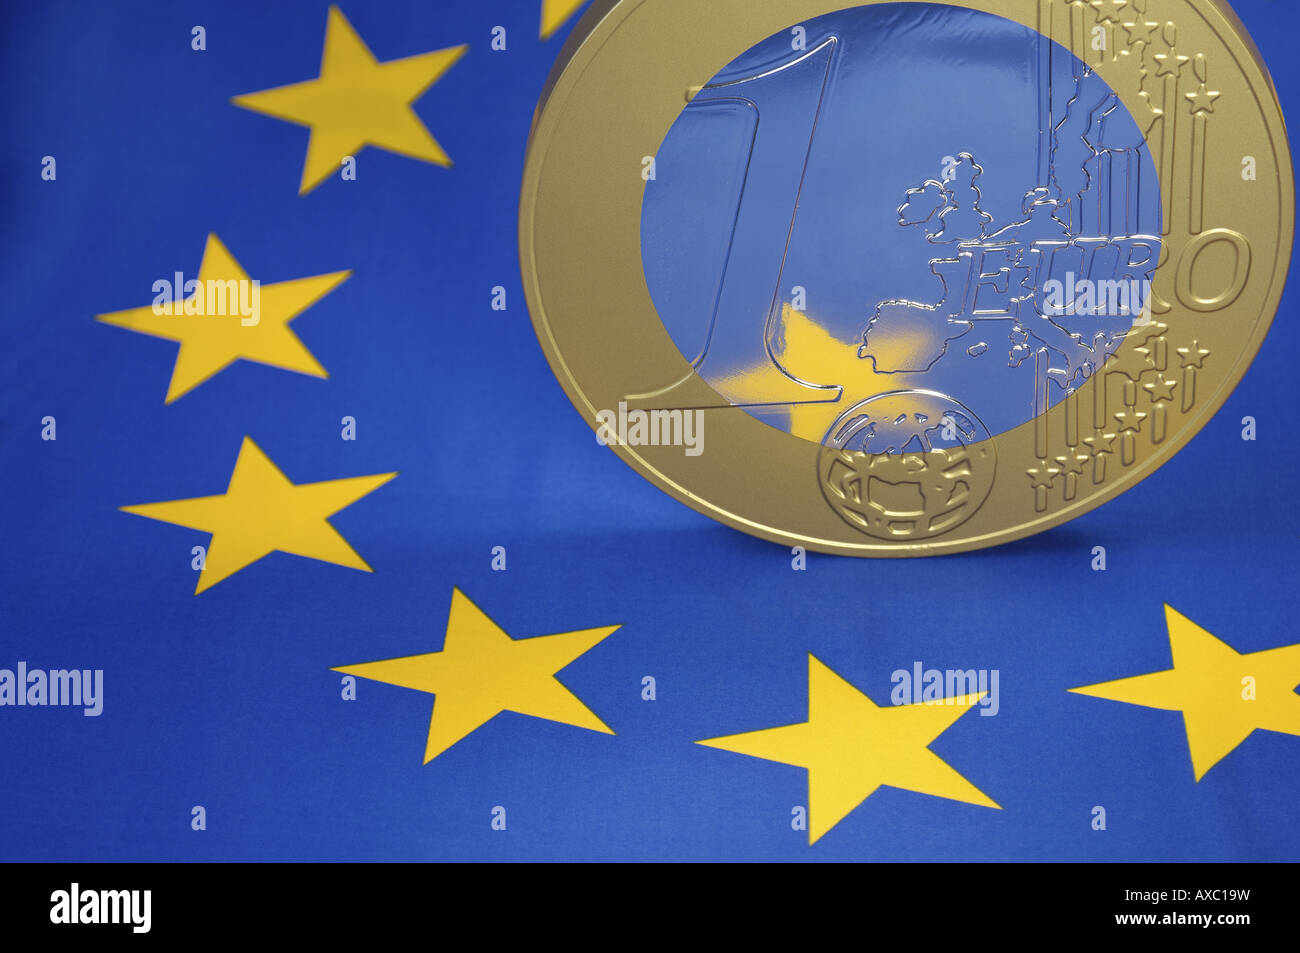 Euro coin on European flag Stock Photo